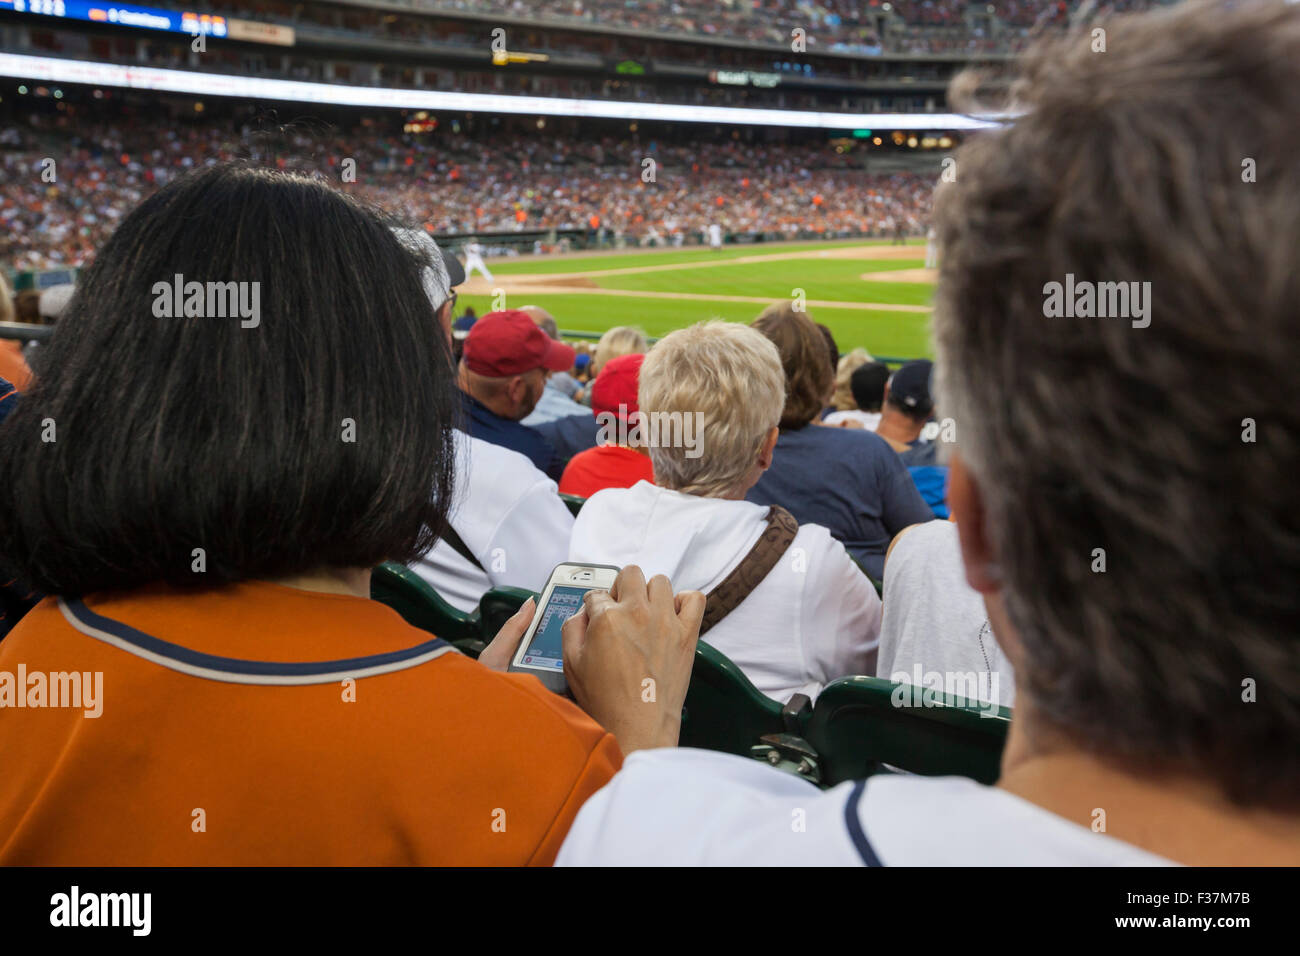 Detroit, Michigan - eine Frau spielt Solitär auf ihr Handy im Comerica Park bei einem Baseballspiel. Stockfoto